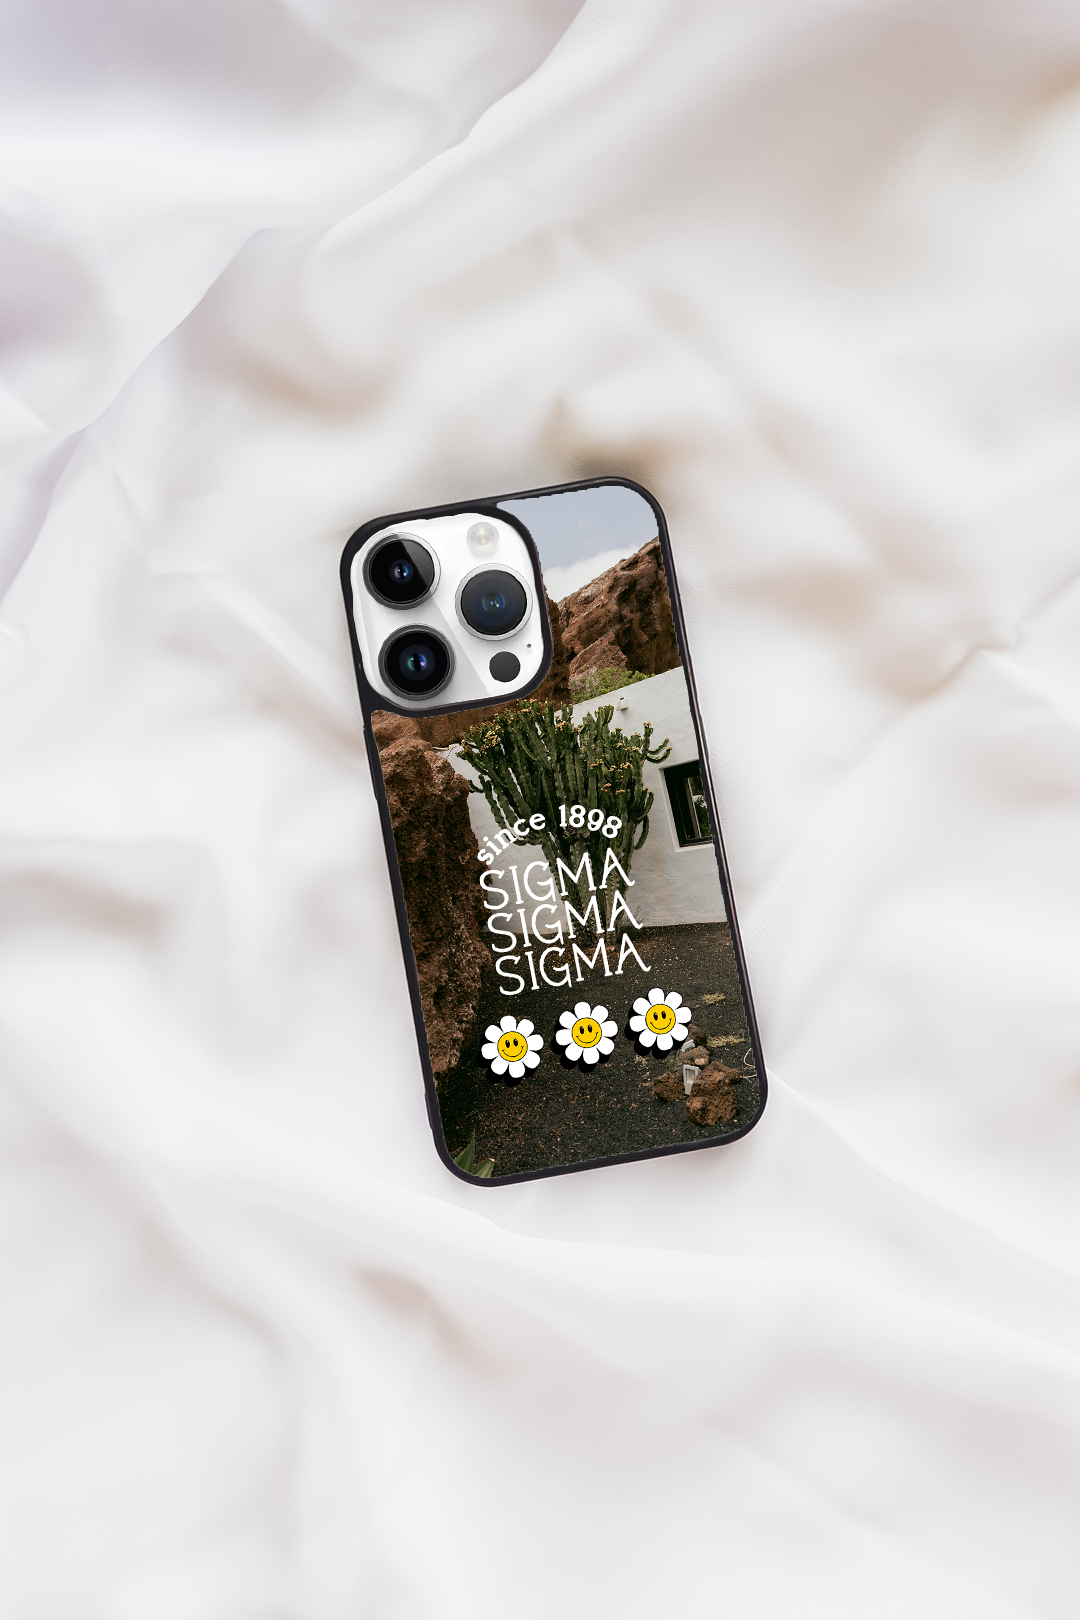 Cactus iPhone case - Sigma Sigma Sigma